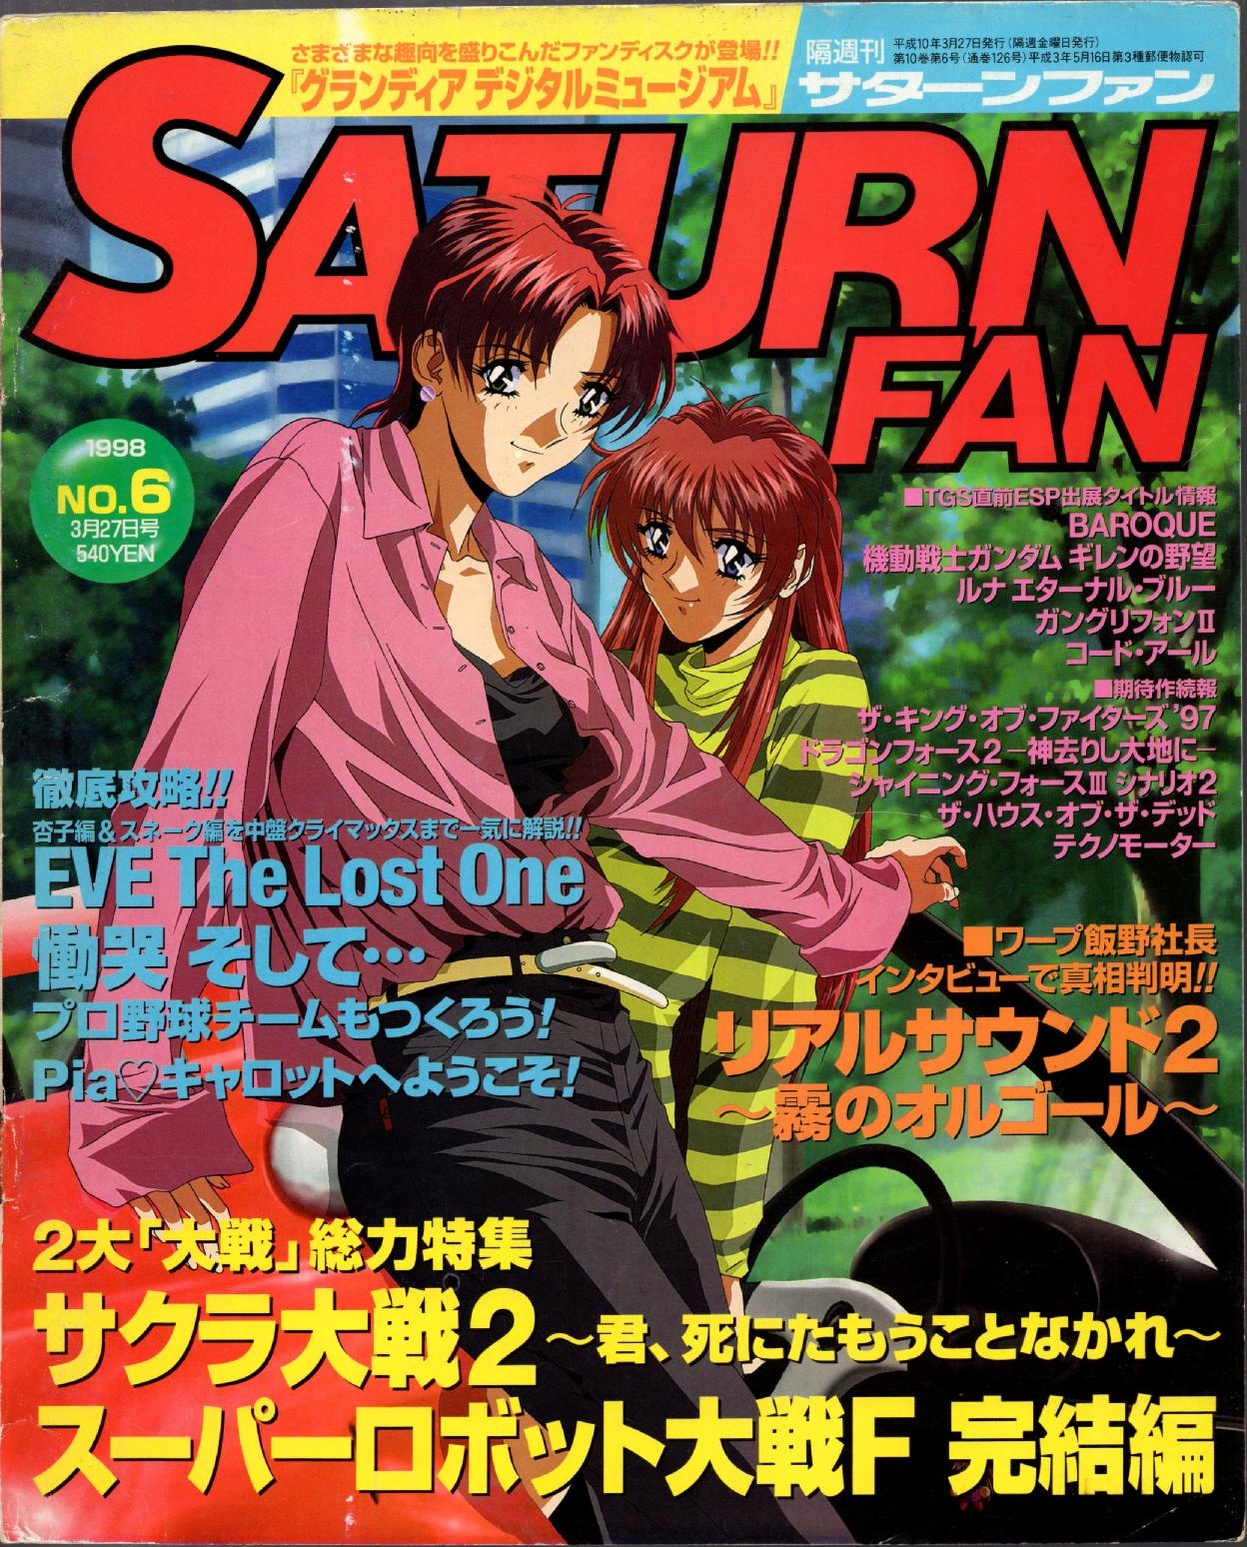 SaturnFan JP 1998-06 19980327.pdf